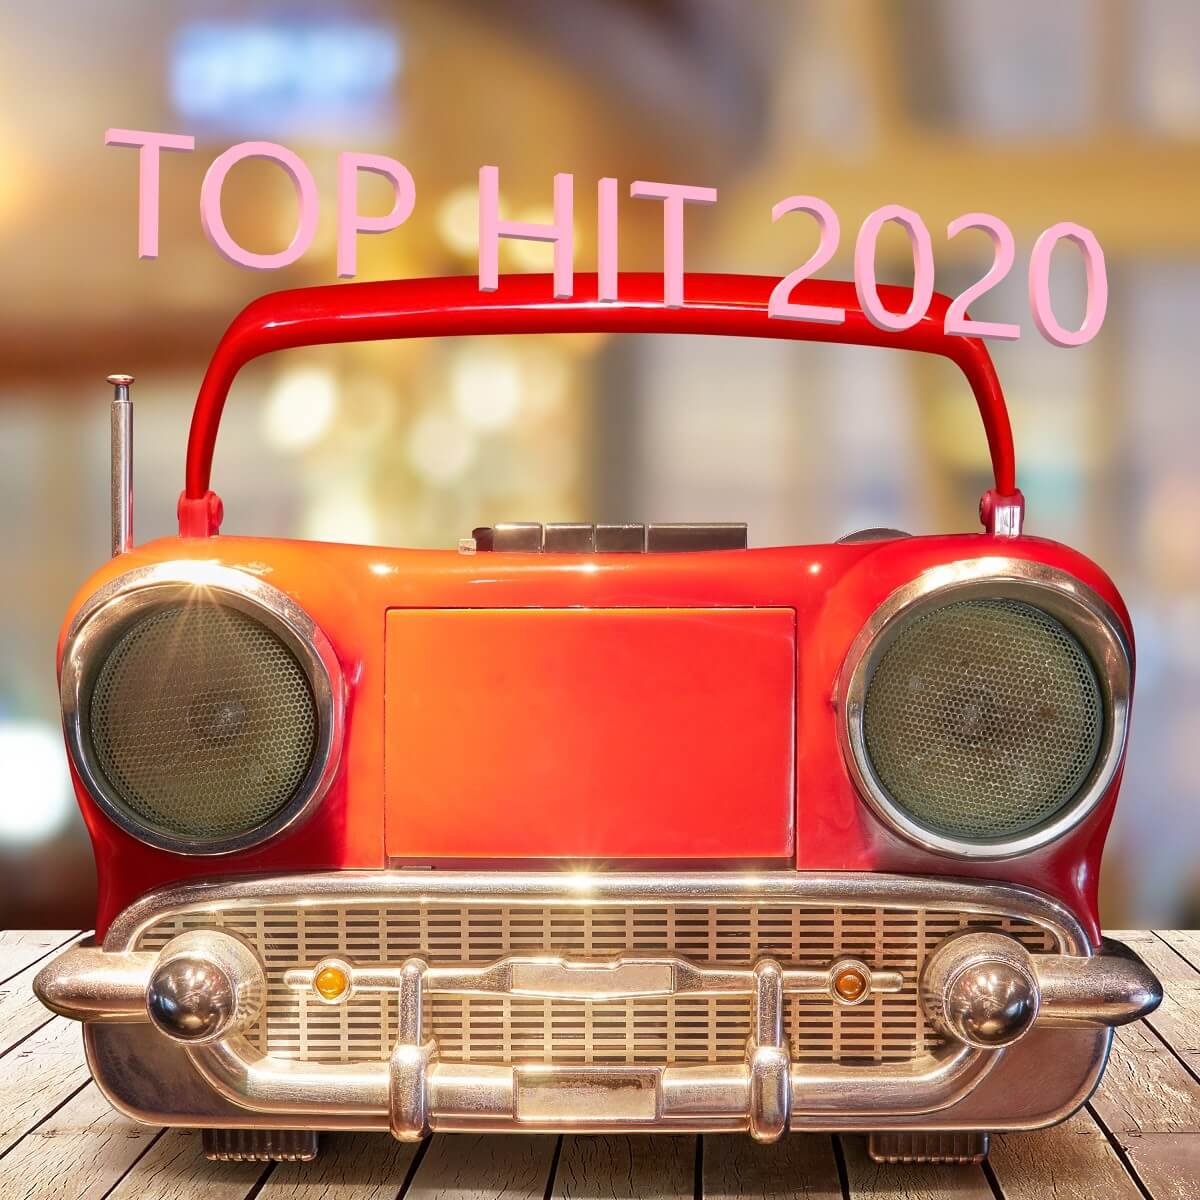 「TOP HIT 2020」車のようなデザインのラジカセ。